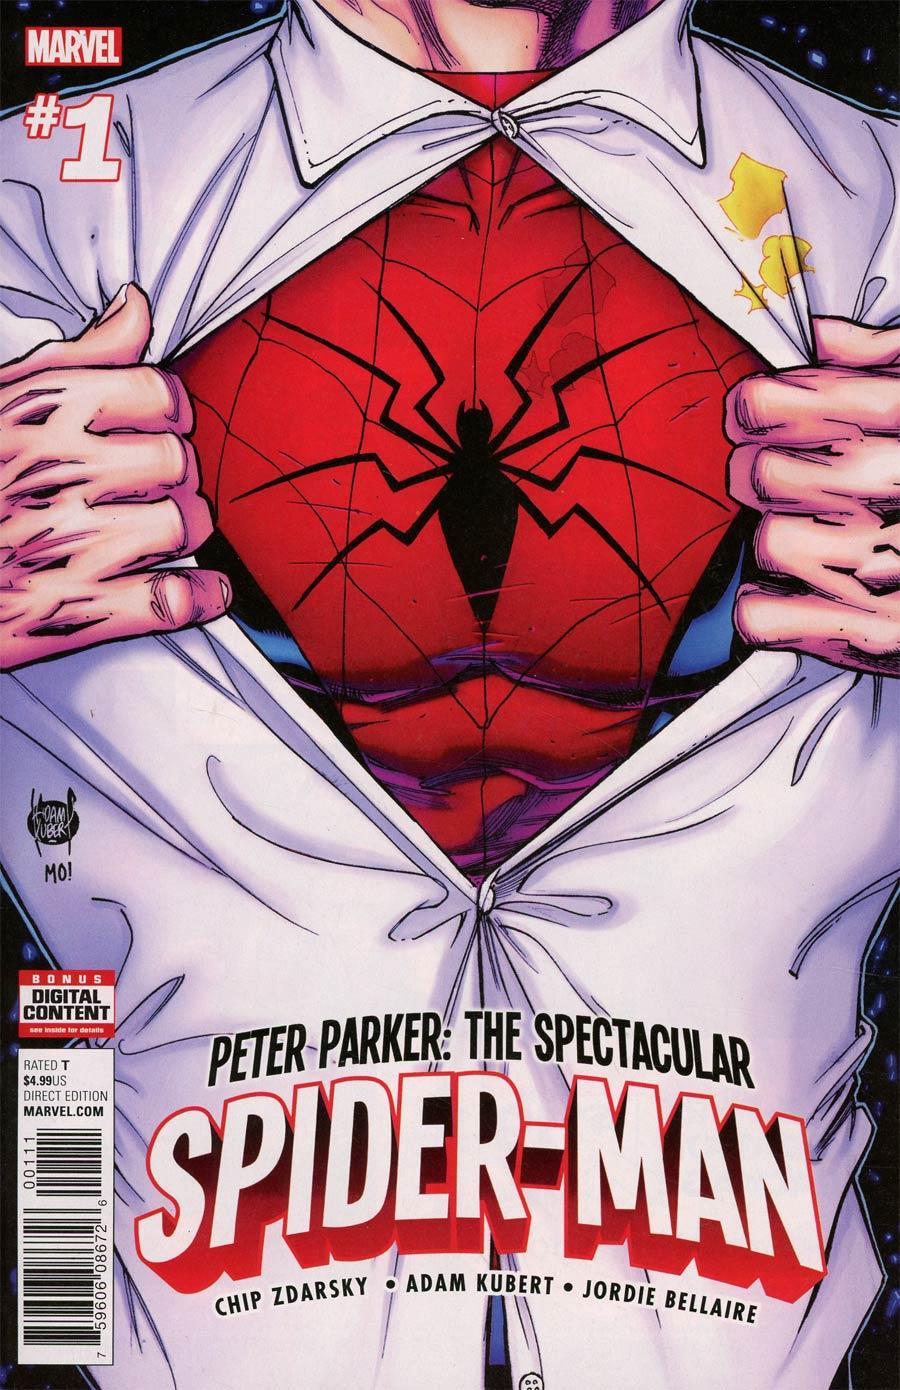 Peter Parker Spectacular Spider-Man Vol. 1 #1